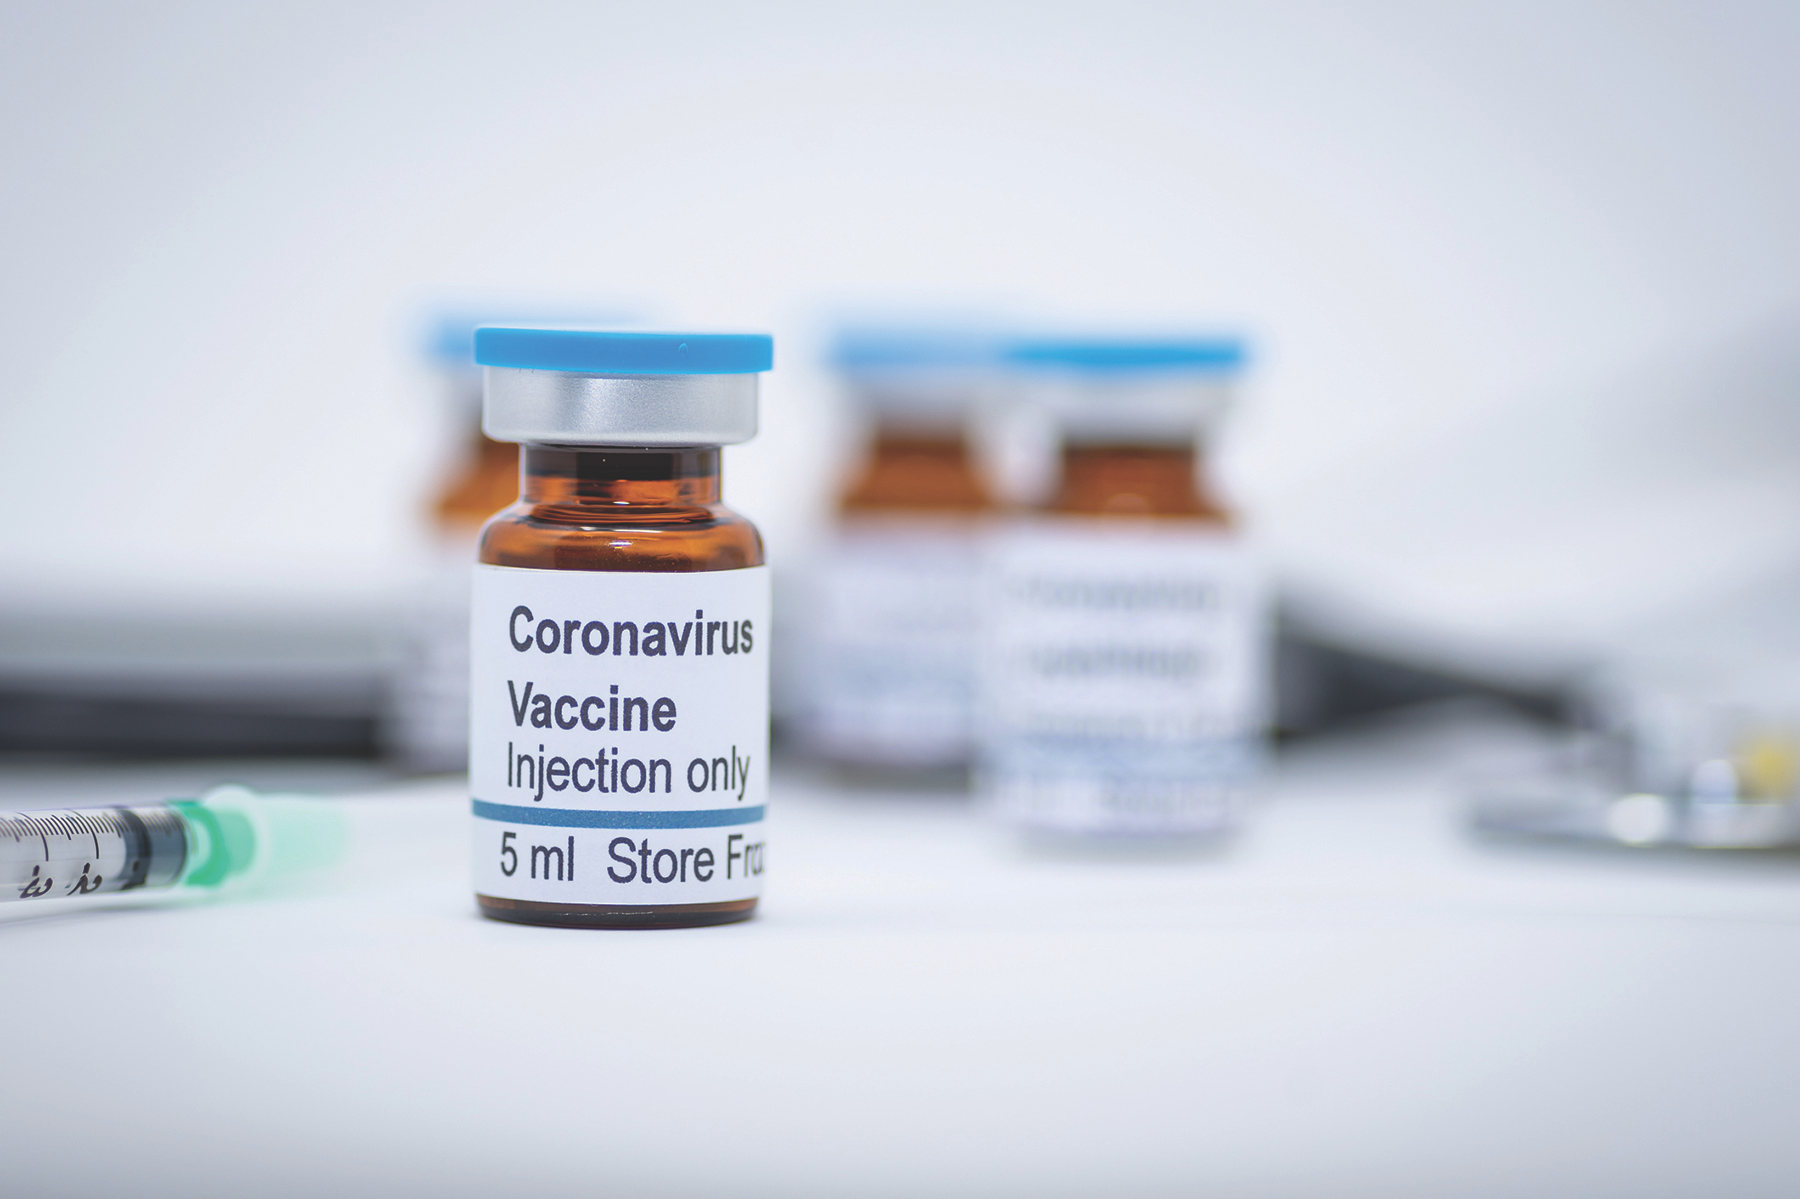 Καθηγητής ΑΠΘ: «Μετά το 2022 θα είναι έτοιμο το εμβόλιο για τον κορωνοϊό – Σε τρία χρόνια στην Ελλάδα» (βίντεο)